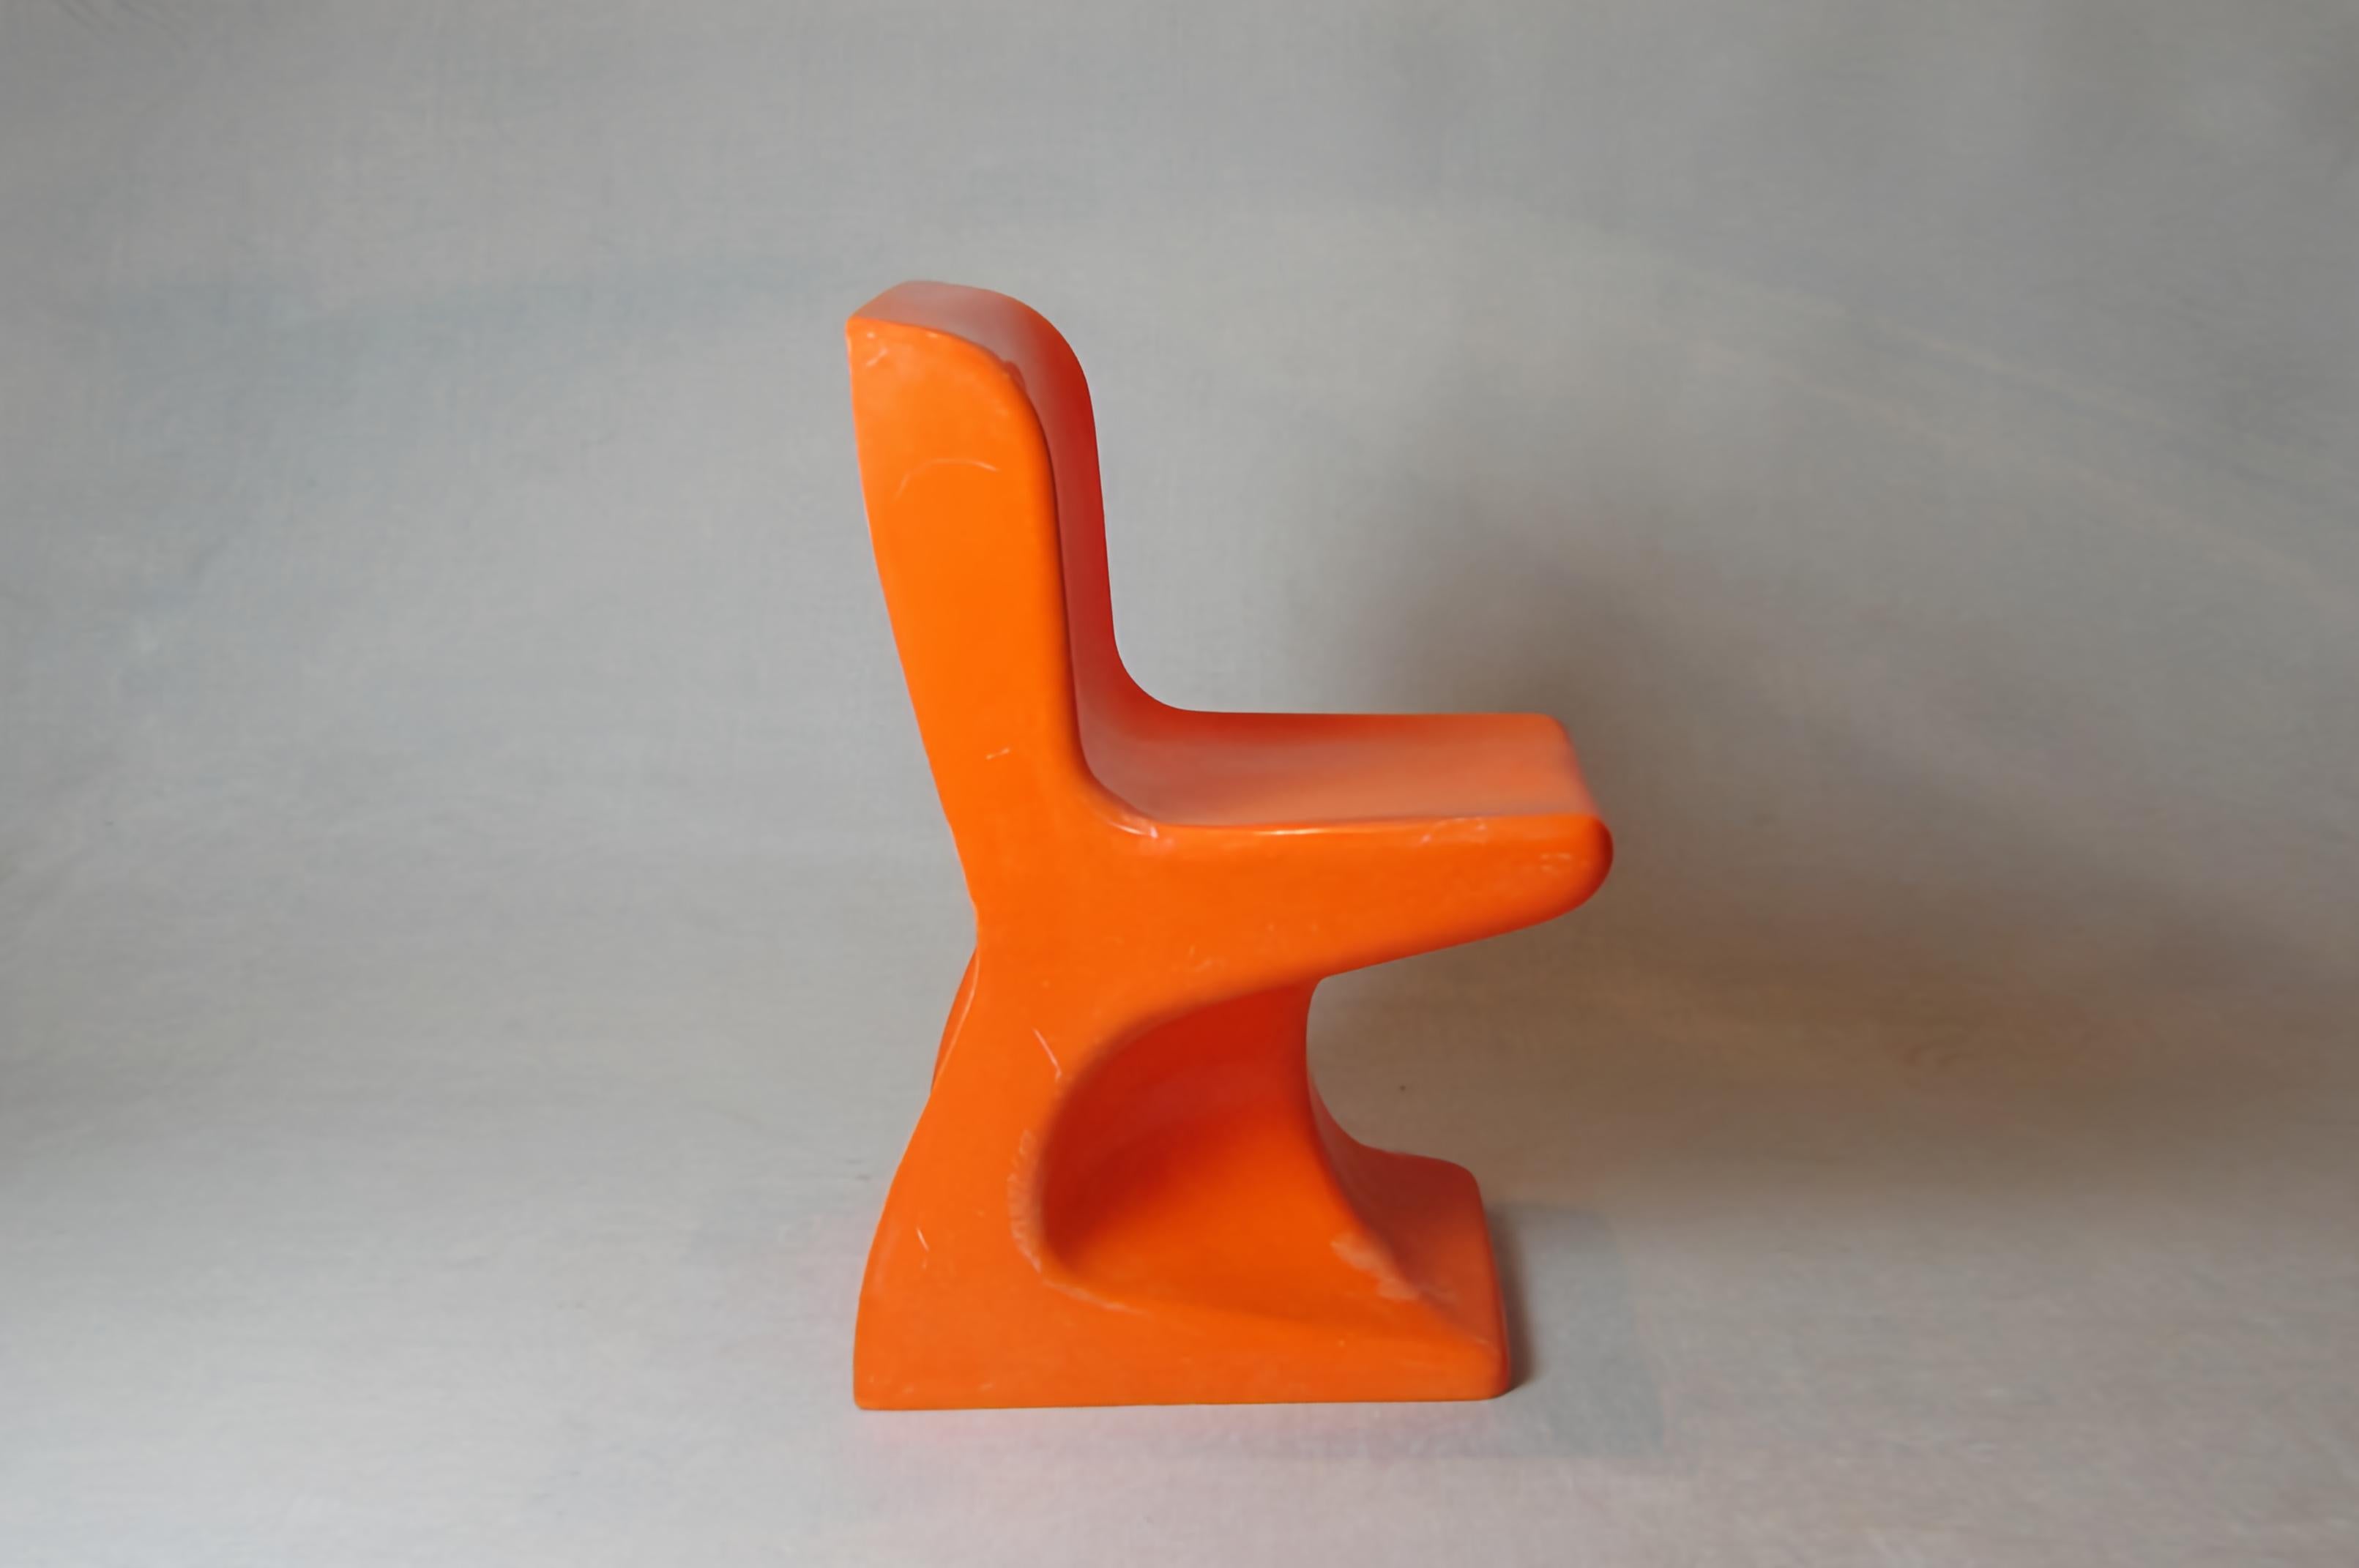 Chaise empilable pour enfants conçue par Patrick Gingembre pour A.E.L.A.P., France 1970. Ils sont fabriqués en plastique moulé orange avec une forme organique très caractéristique du style Pop et 